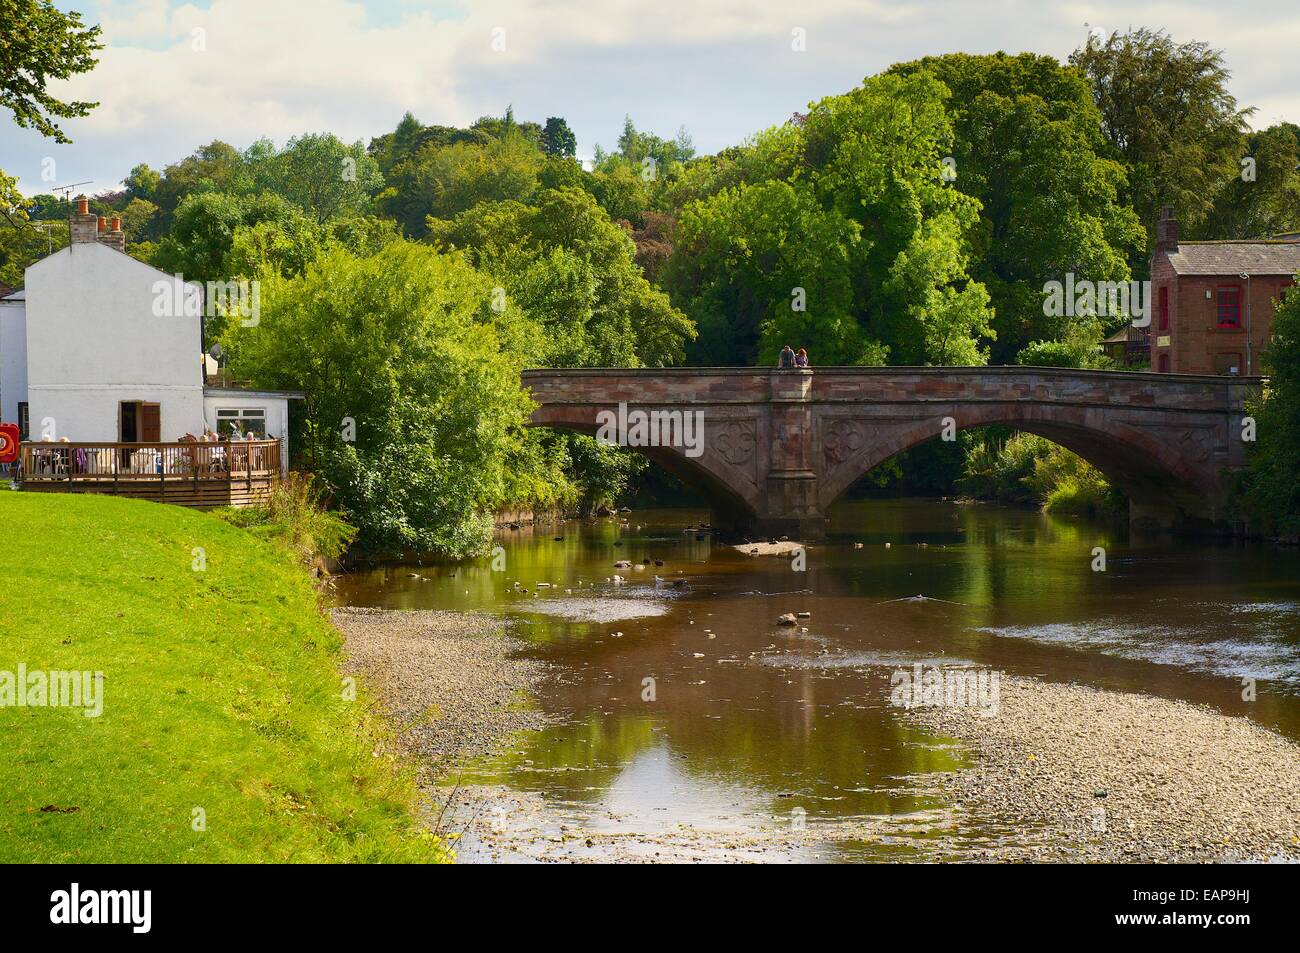 St Lawrence, pont au-dessus de la rivière Eden. Appleby-in-Westmorland, Cumbria, Angleterre, Royaume-Uni. Banque D'Images